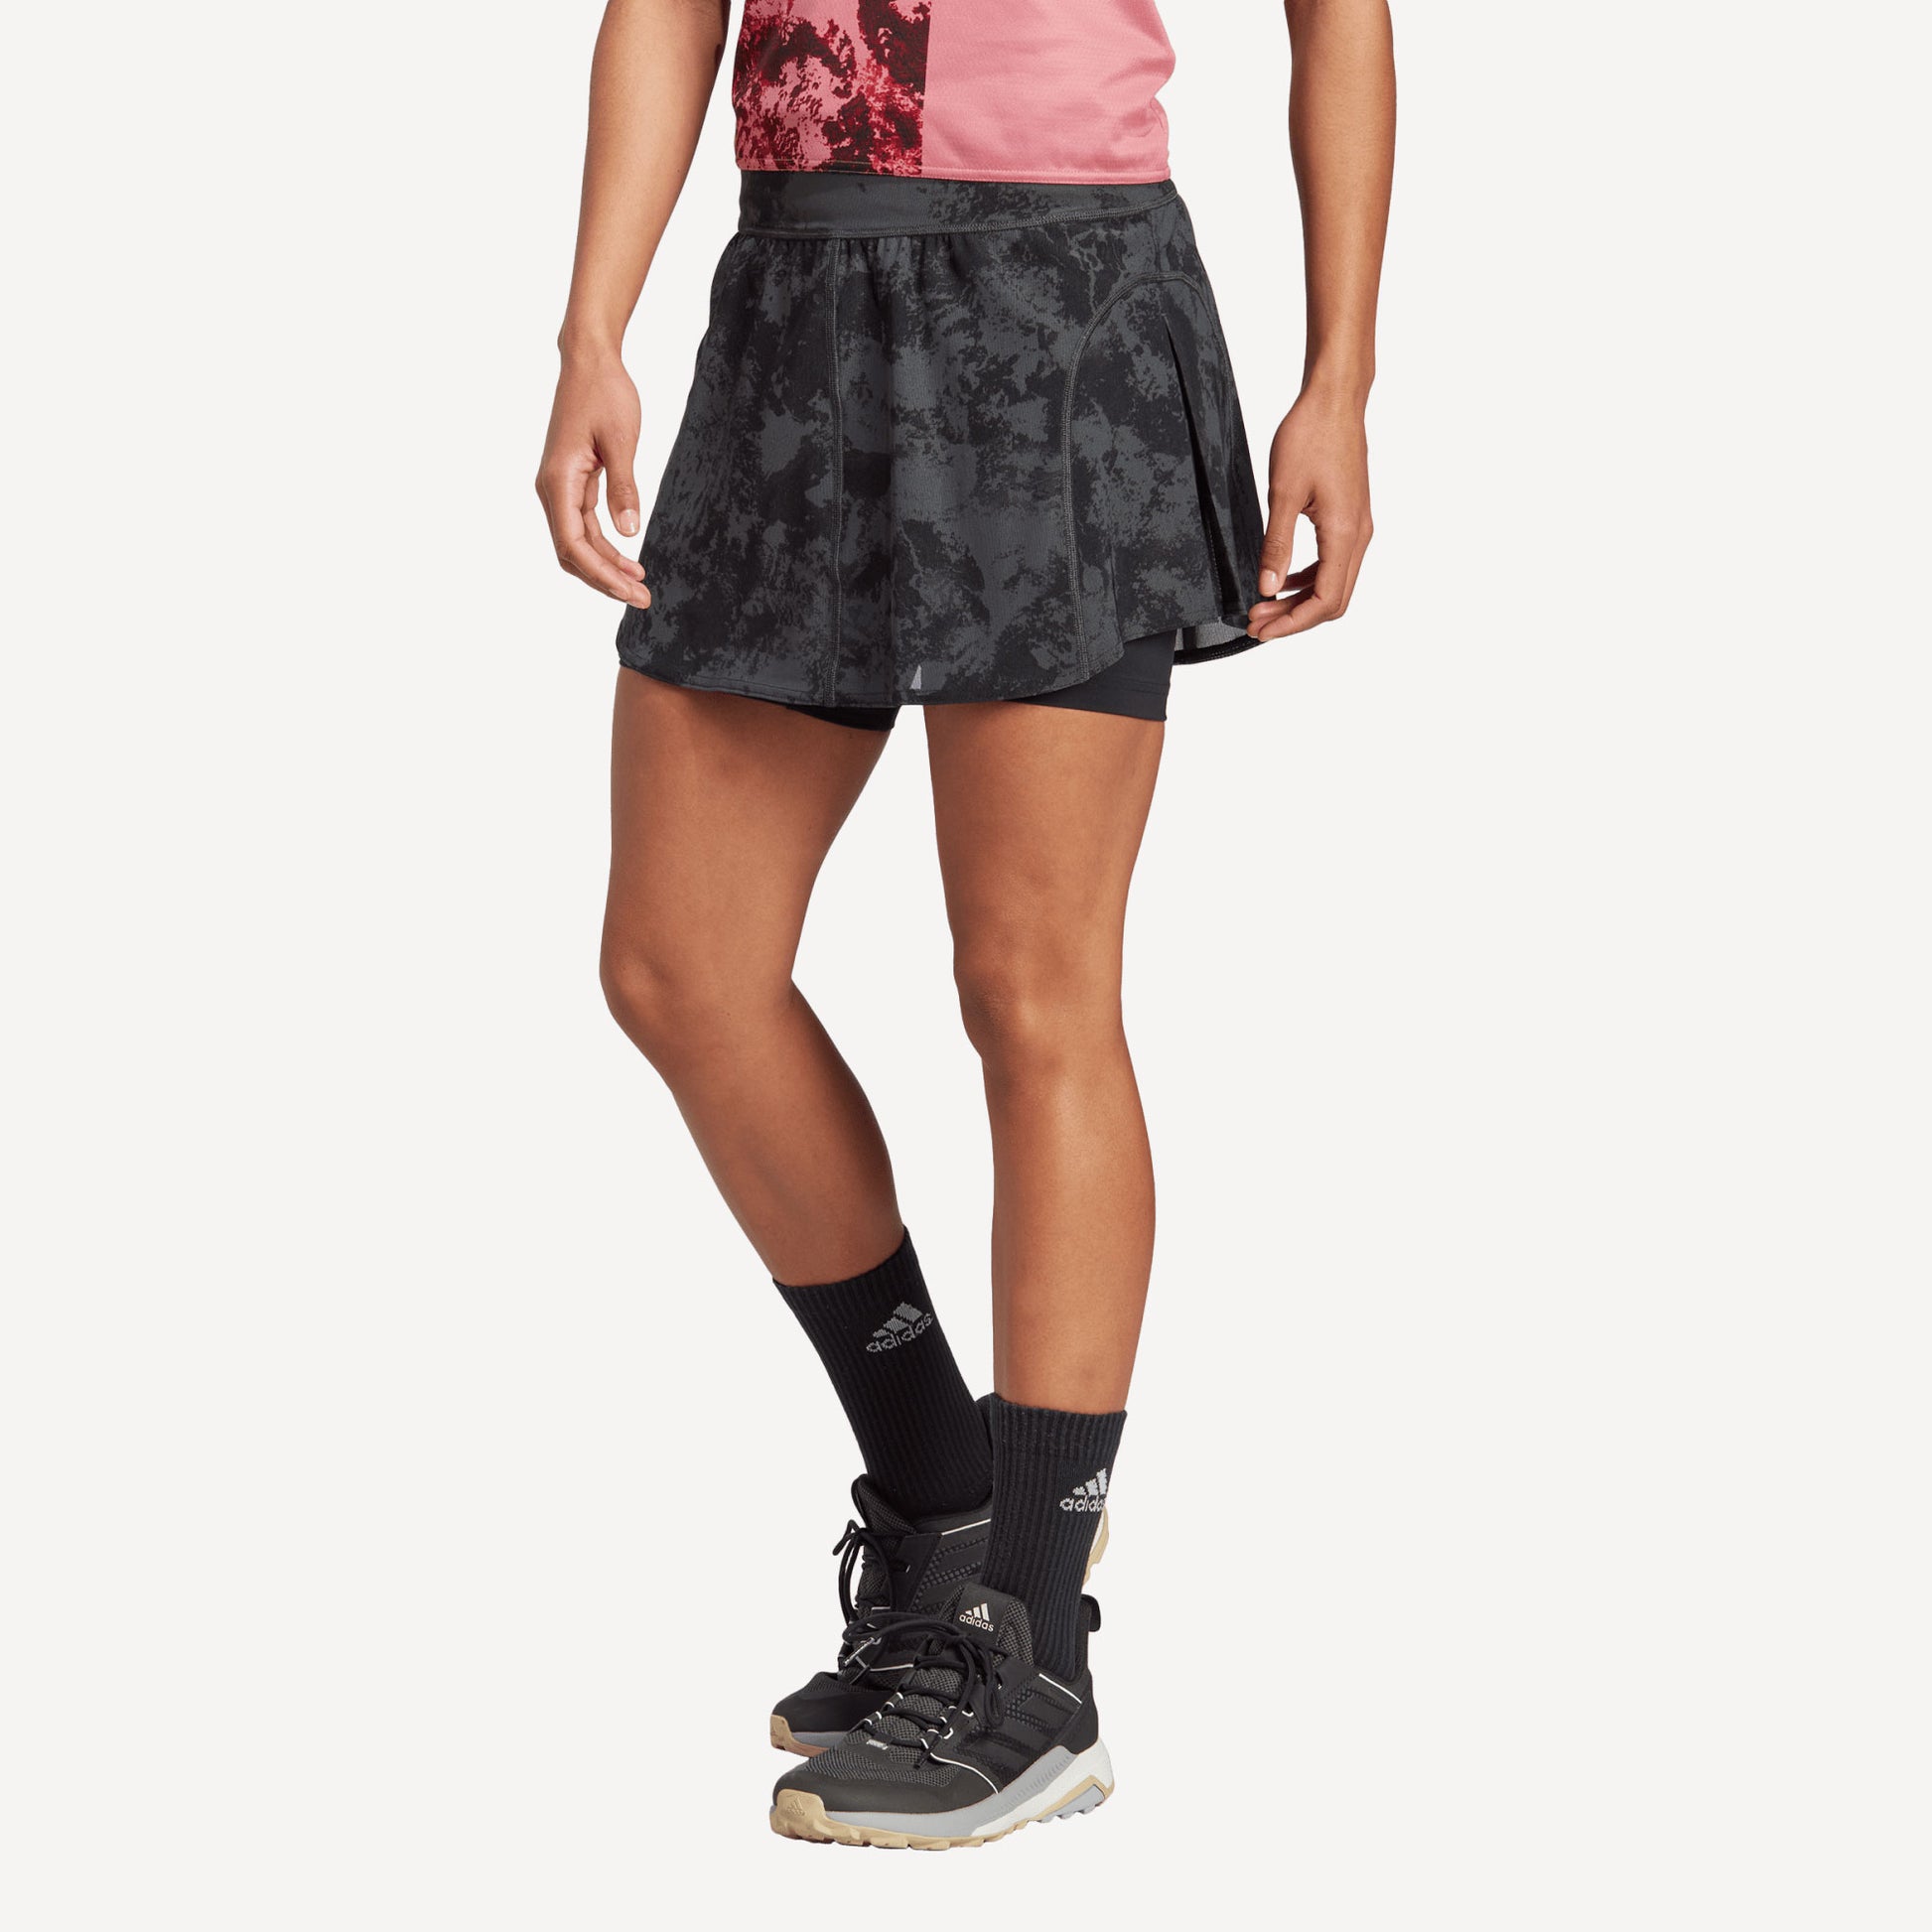 adidas Paris Match Women's Tennis Skirt Grey (1)